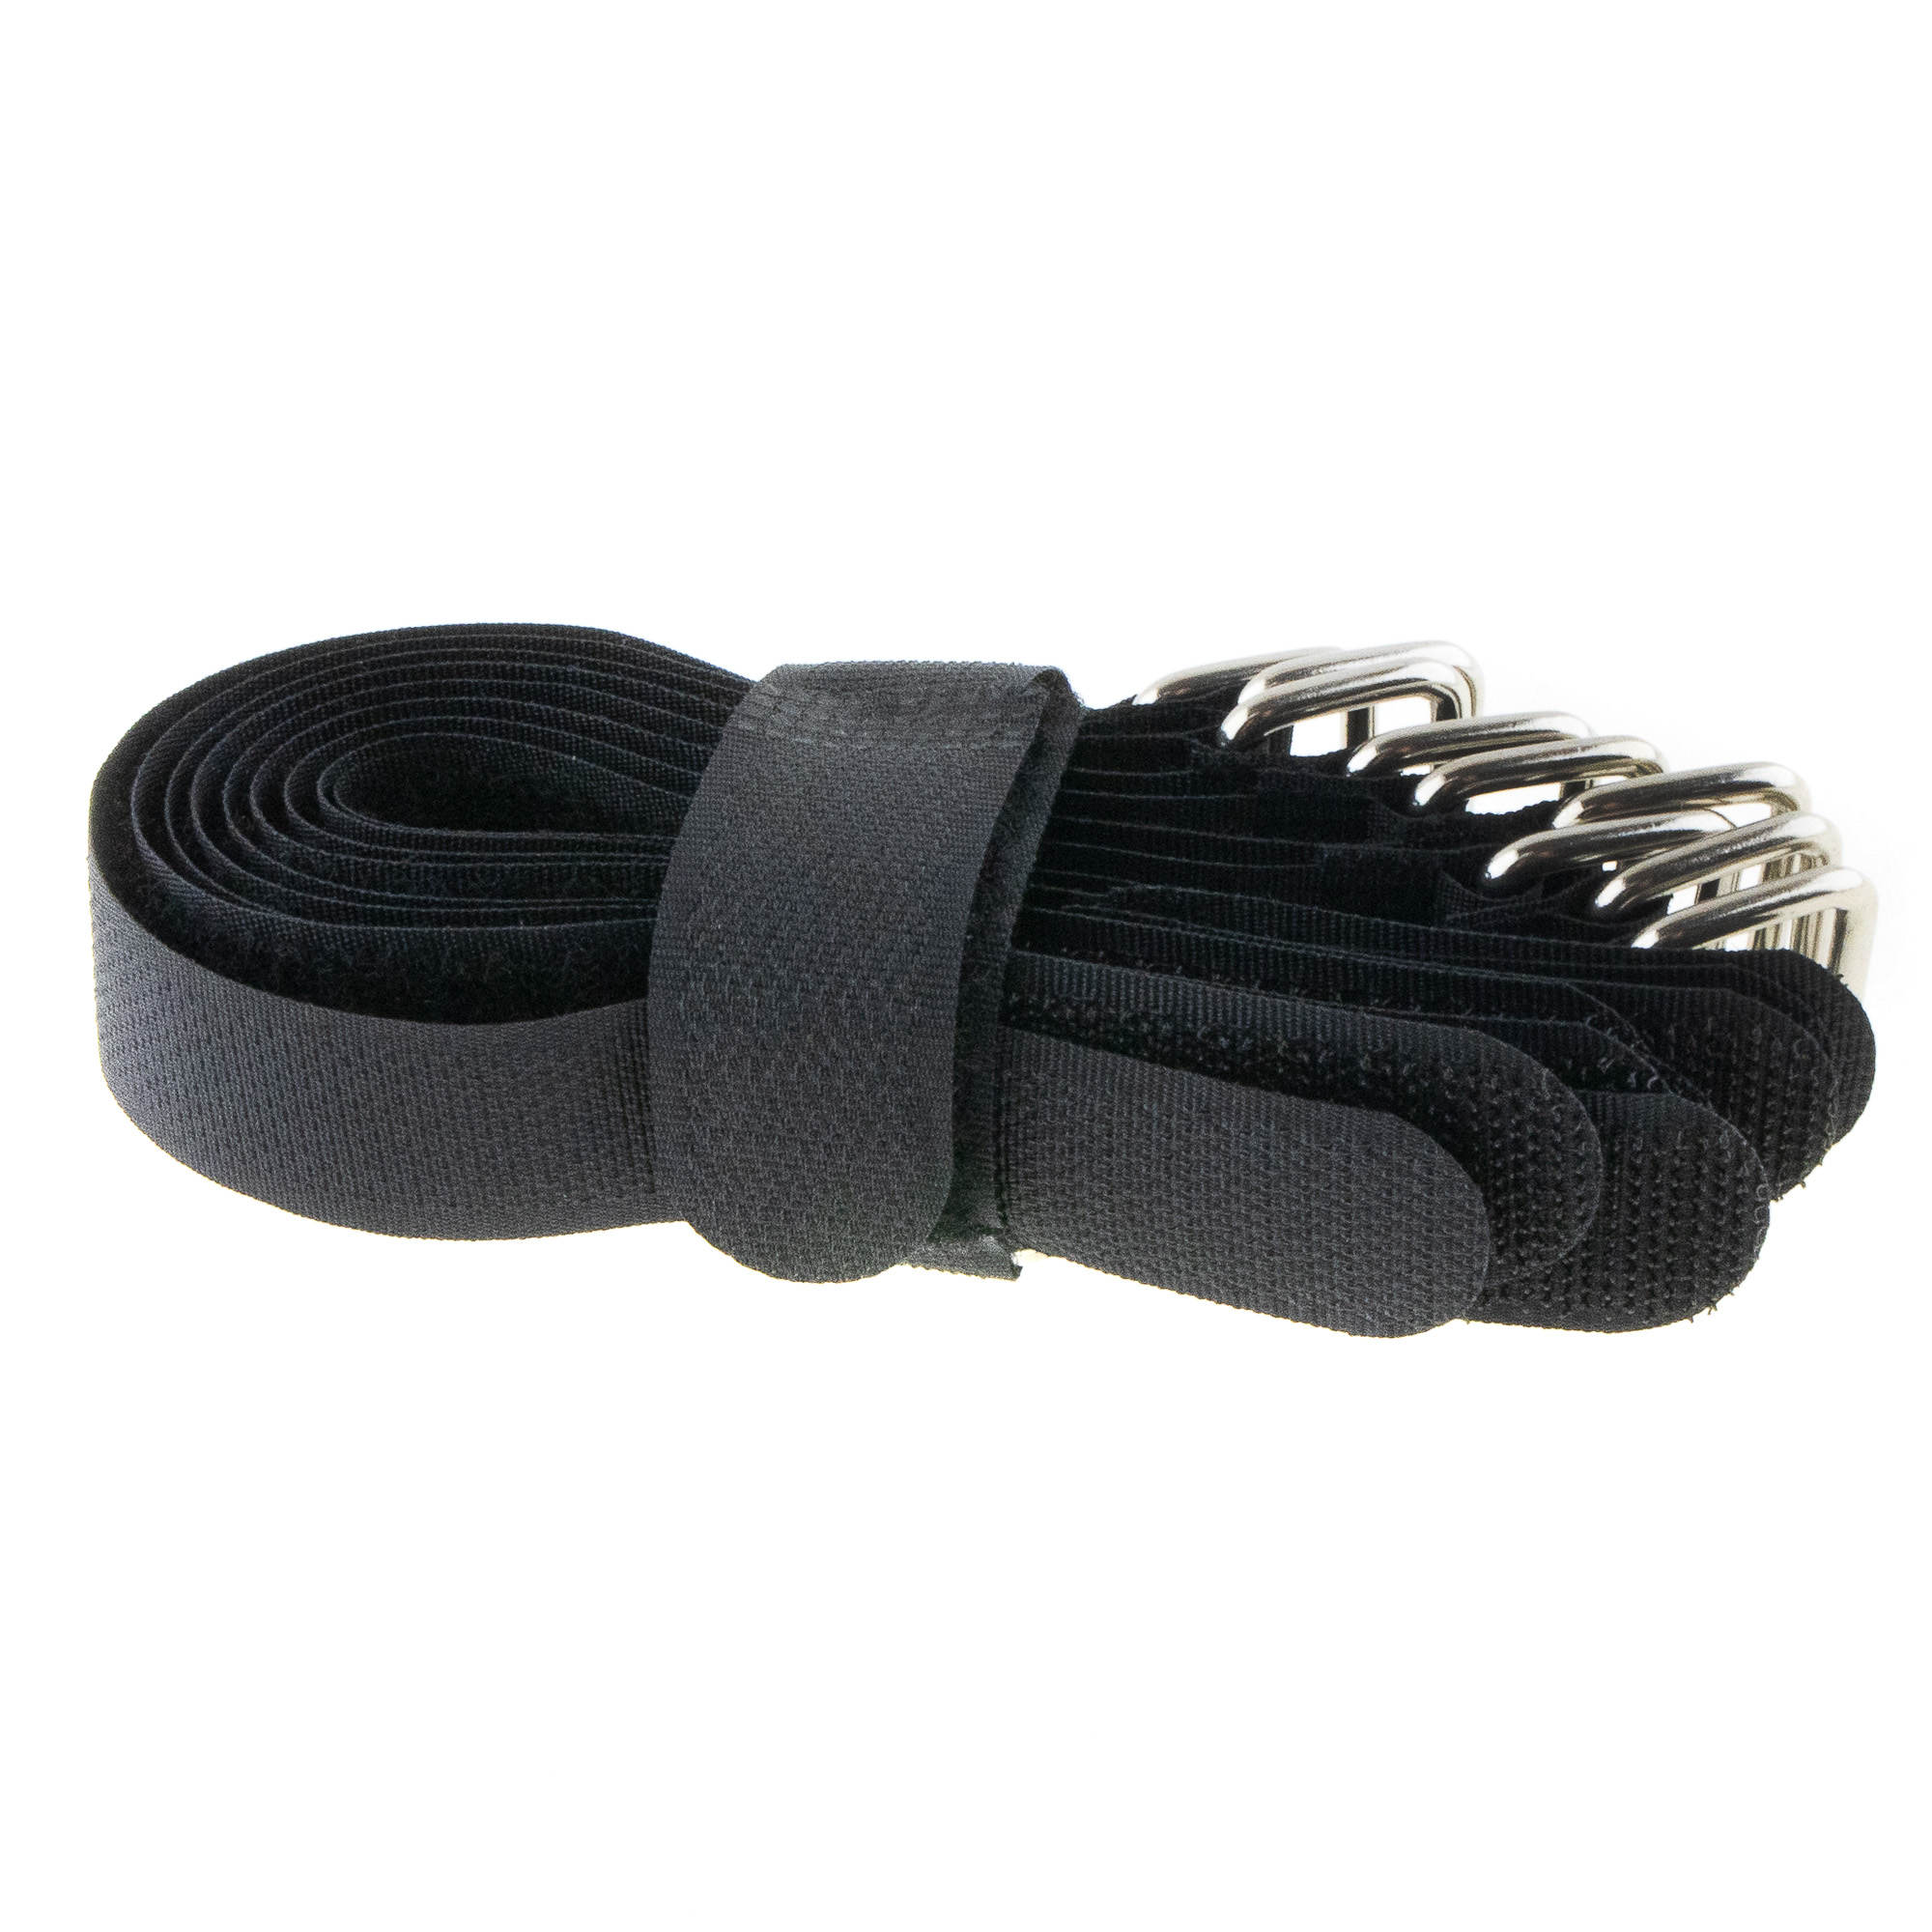 Hook-and-loop strap